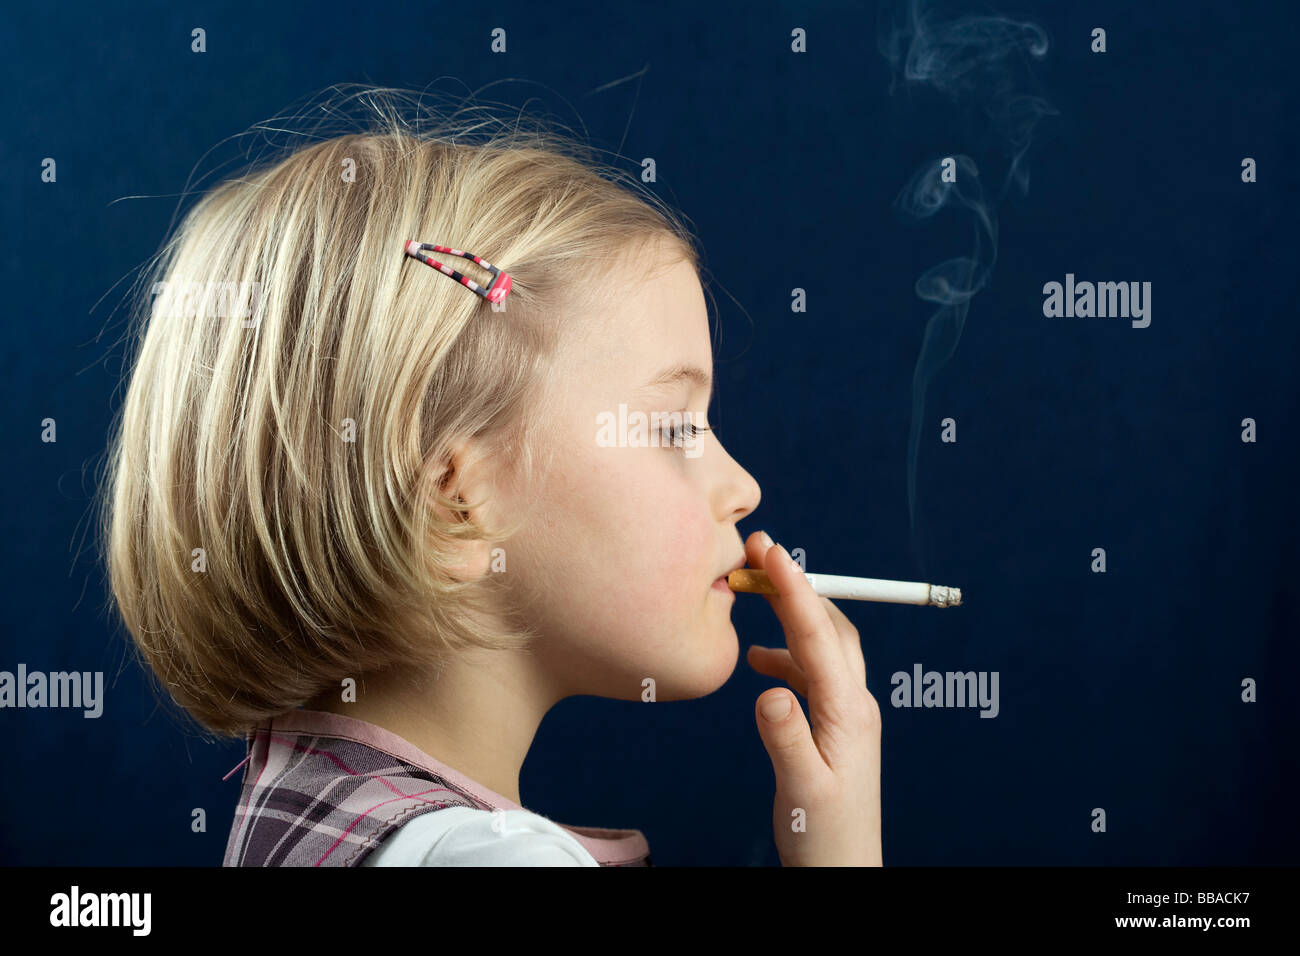 Little girls models tabu. Маленькие курящие девочки. Маленькие курильщицы. Ребенок с сигаретой. Маленькая девочка курит сигарету.